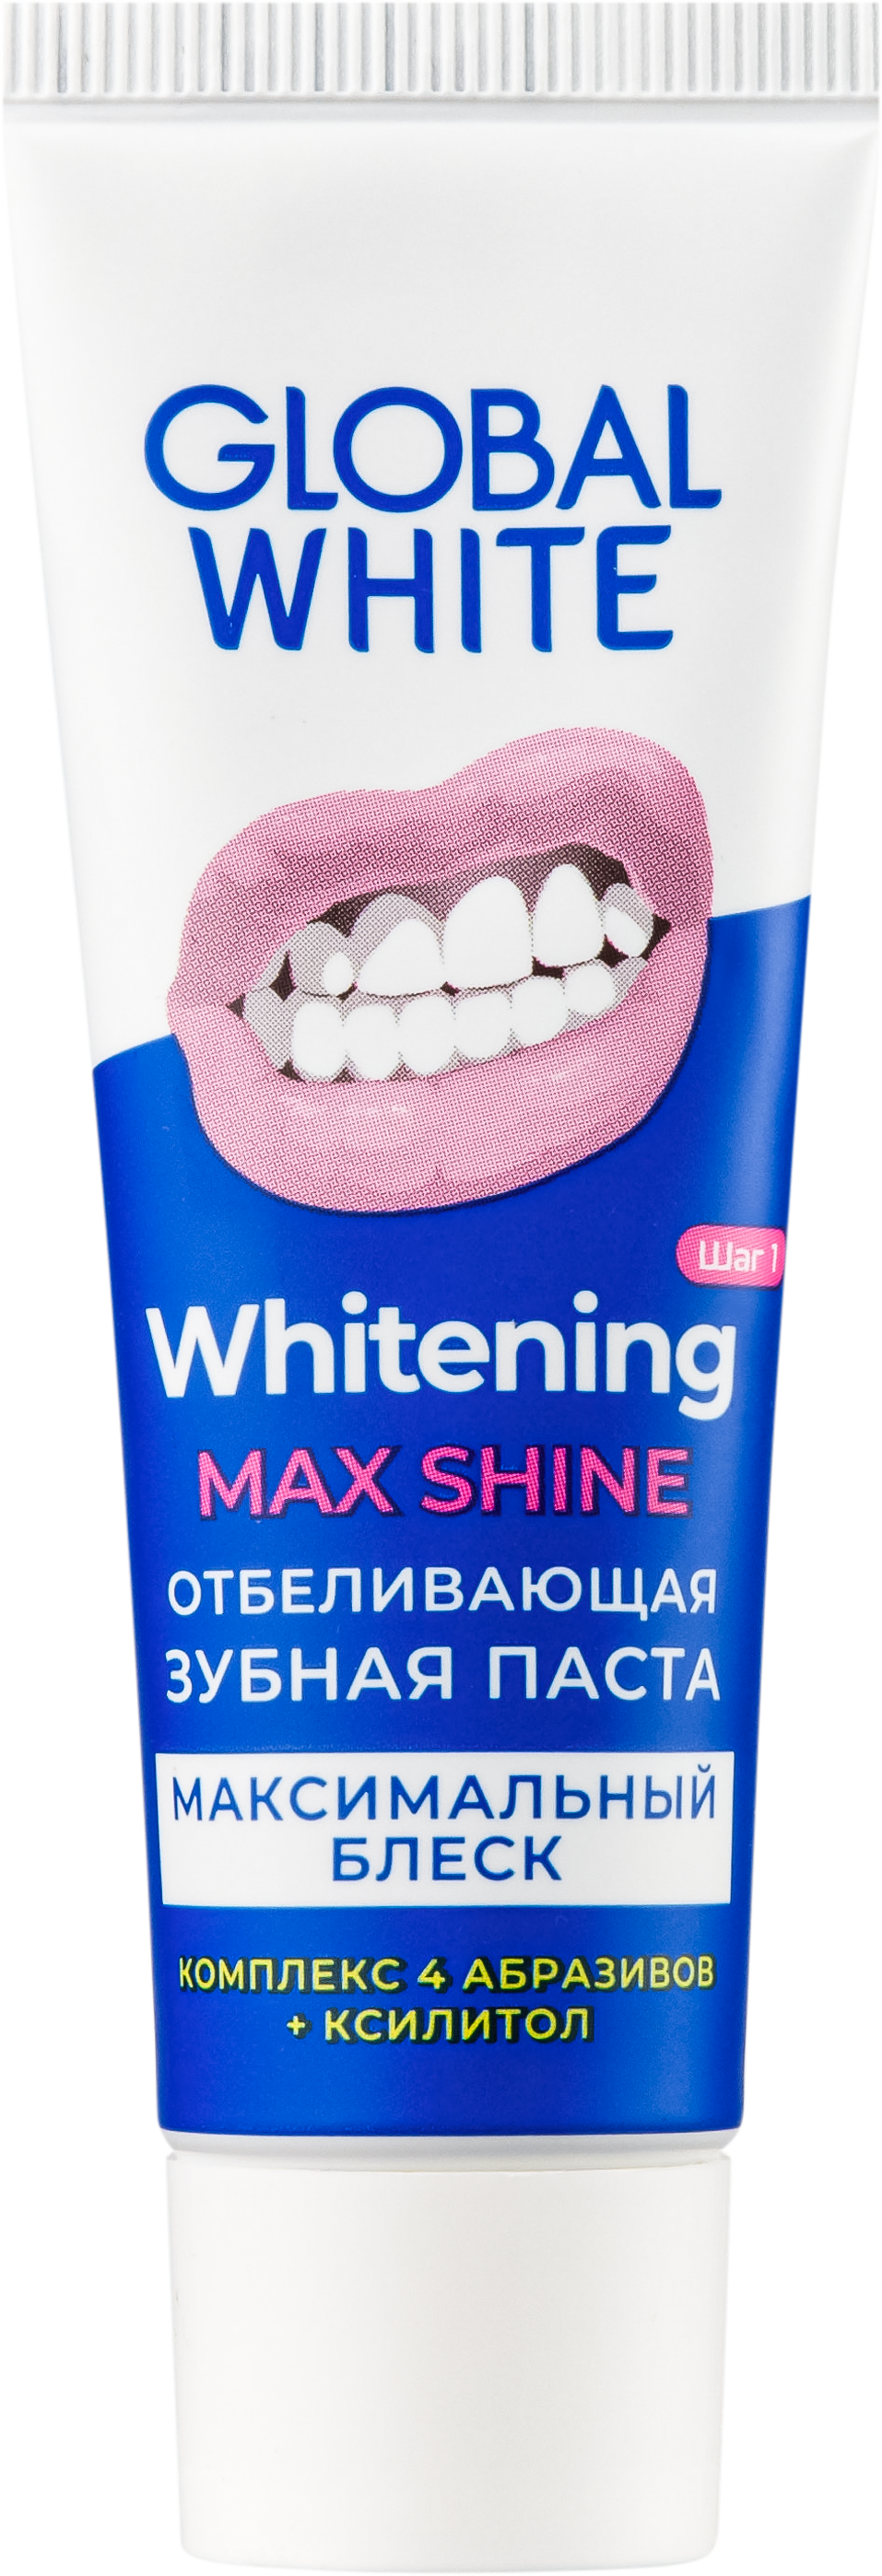 фото упаковки Global White зубная паста отбеливающая Максимальный блеск